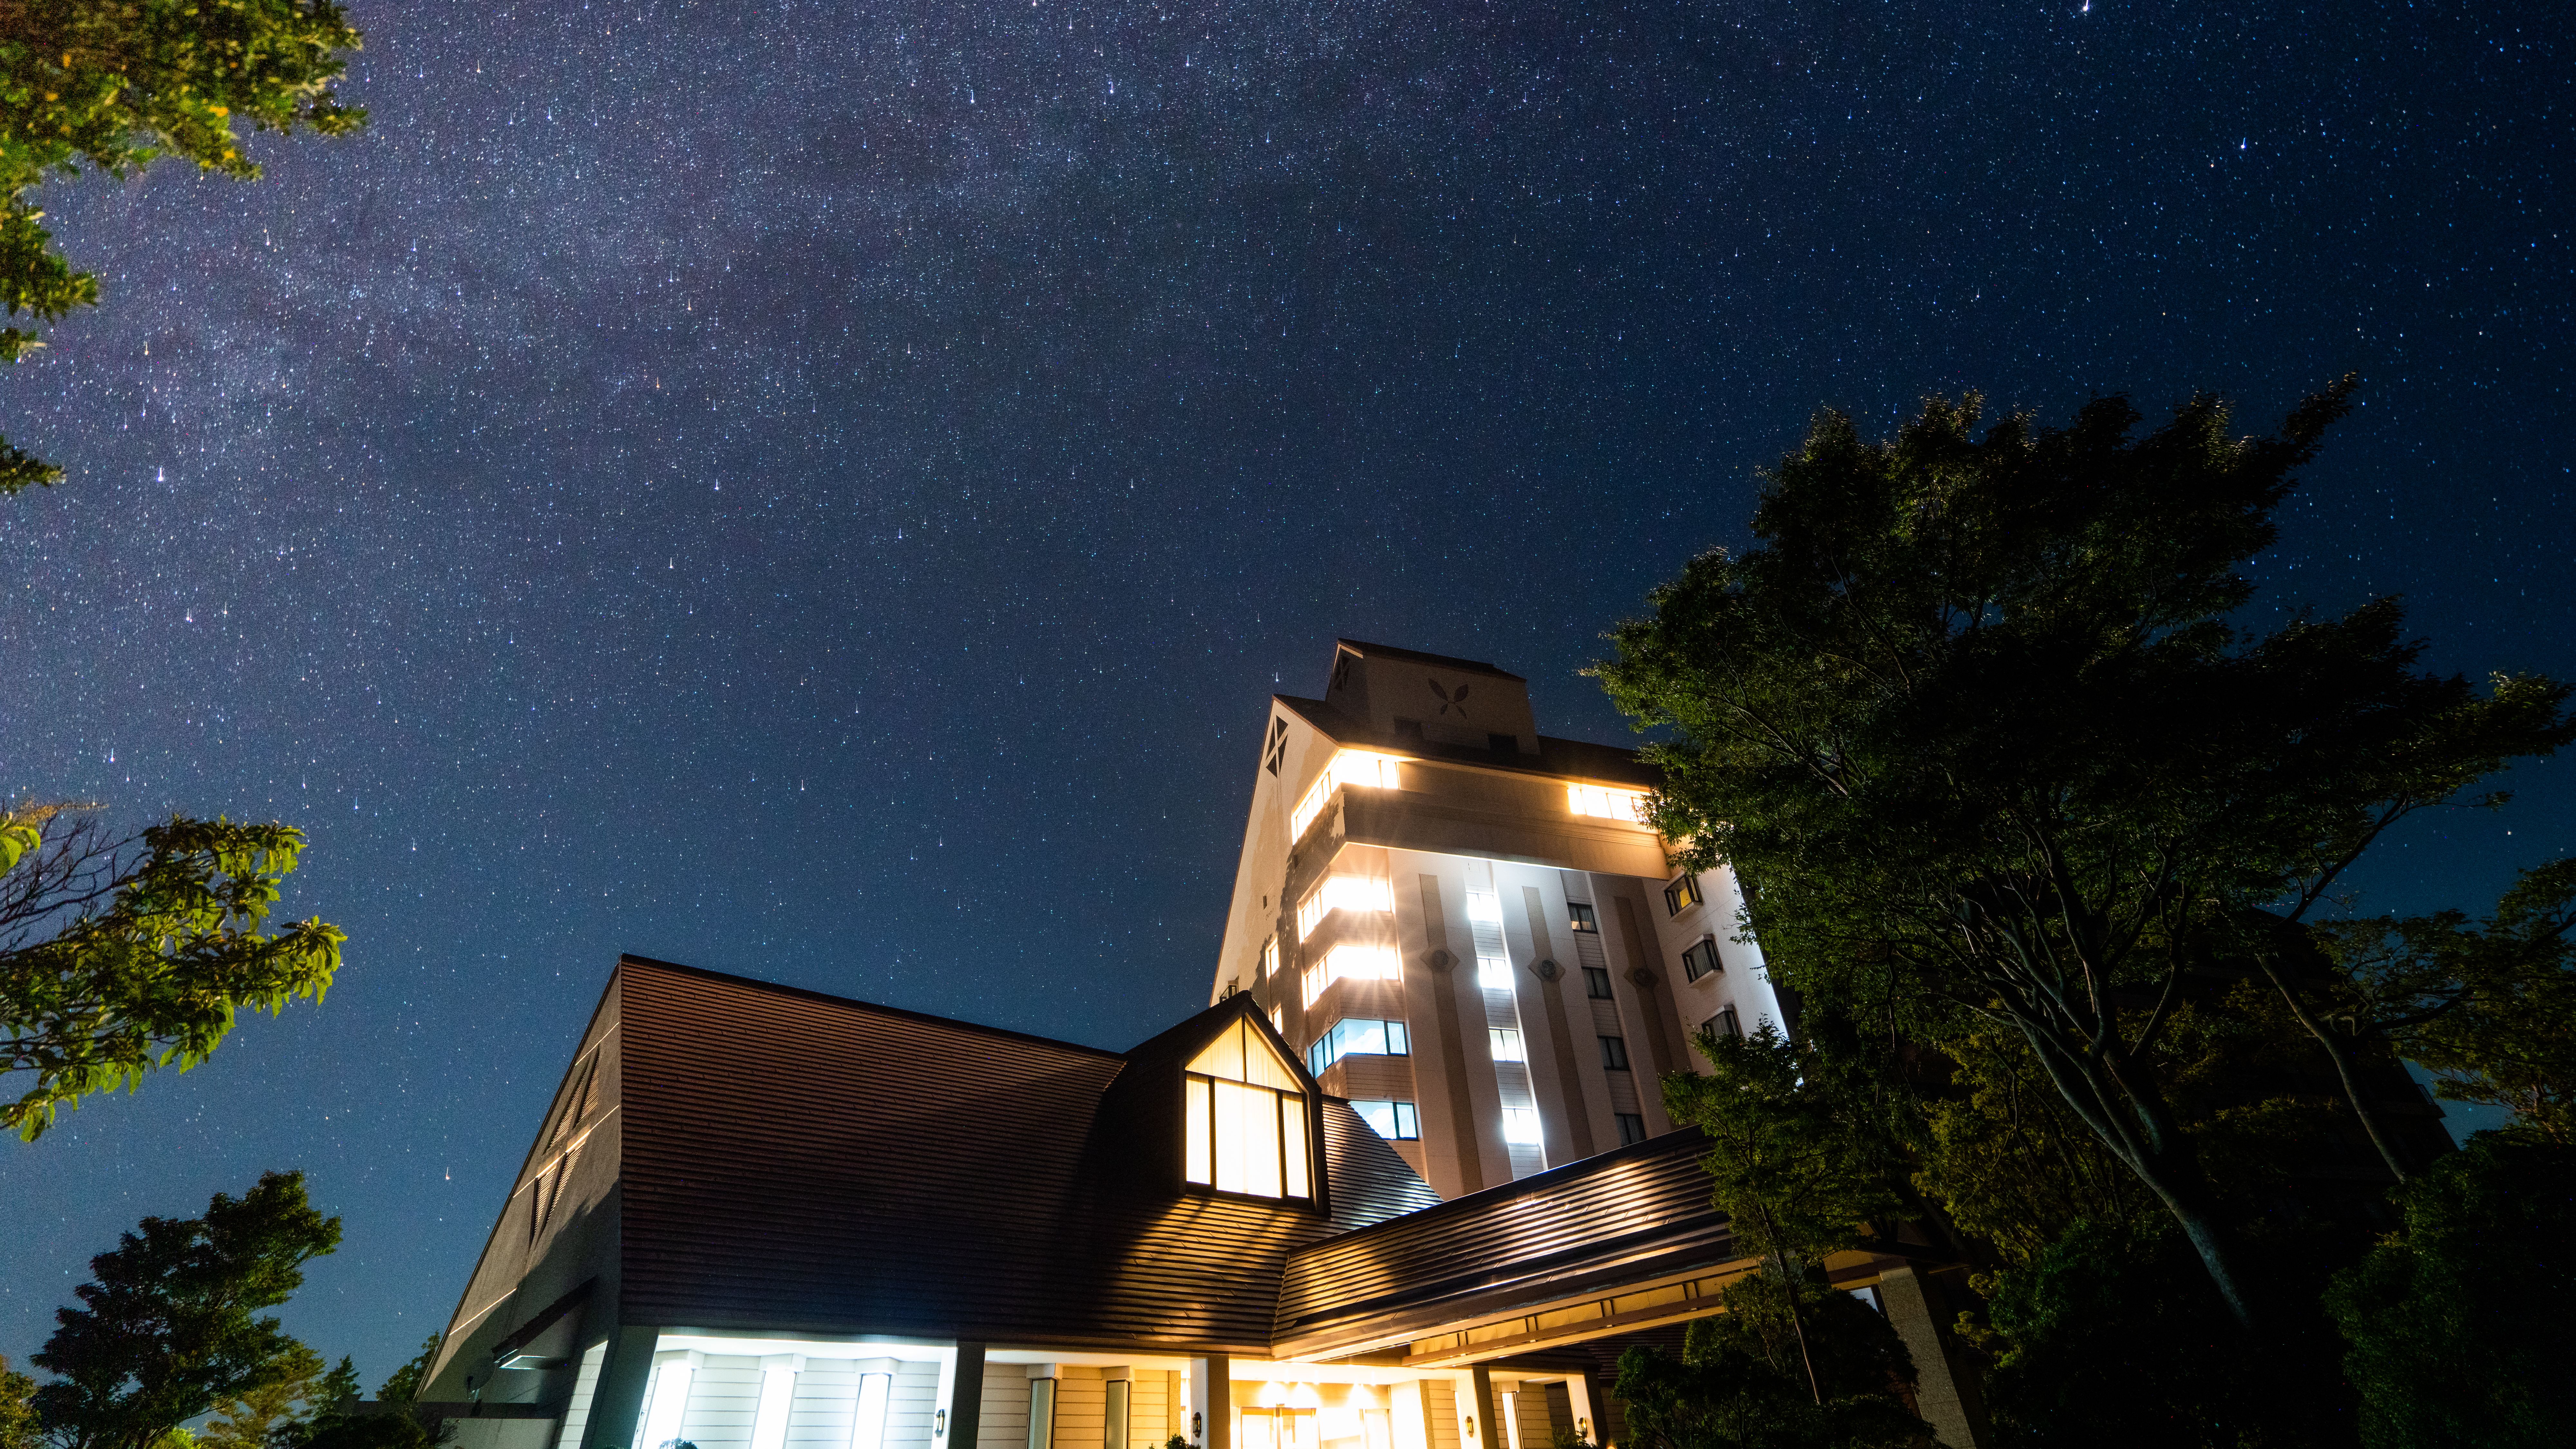 ☆【伊豆で1番星に近いリゾートホテル】標高900mの高原から星降る夜をお楽しみくださいませ。